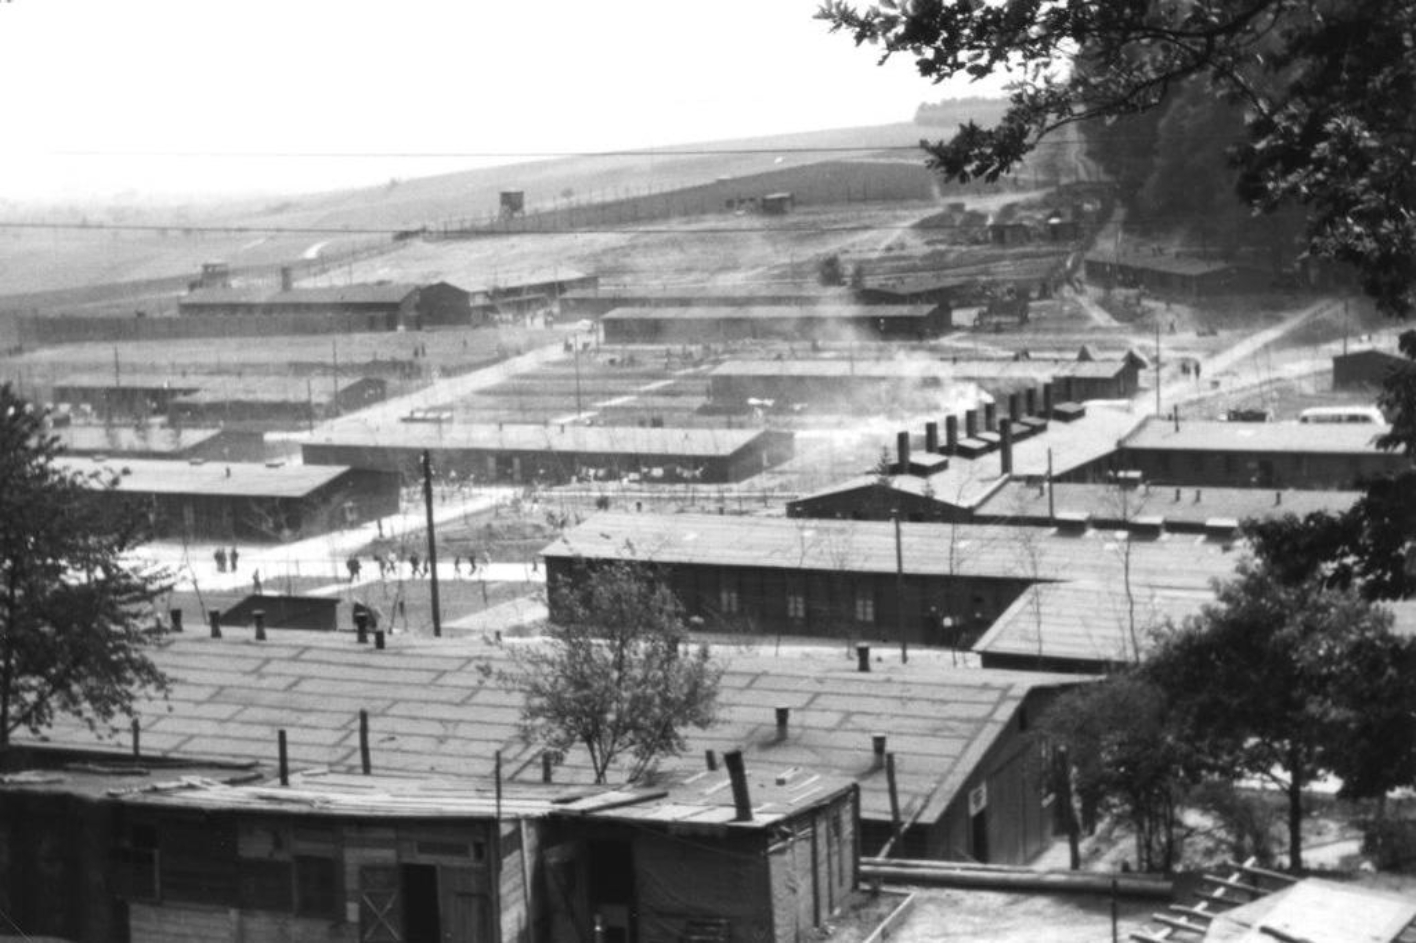 Blick aus nördlicher Richtung über das ehemalige Häftlingslager, deutlich zu erkennen ist die Lagerküche mit den Schornsteinen.